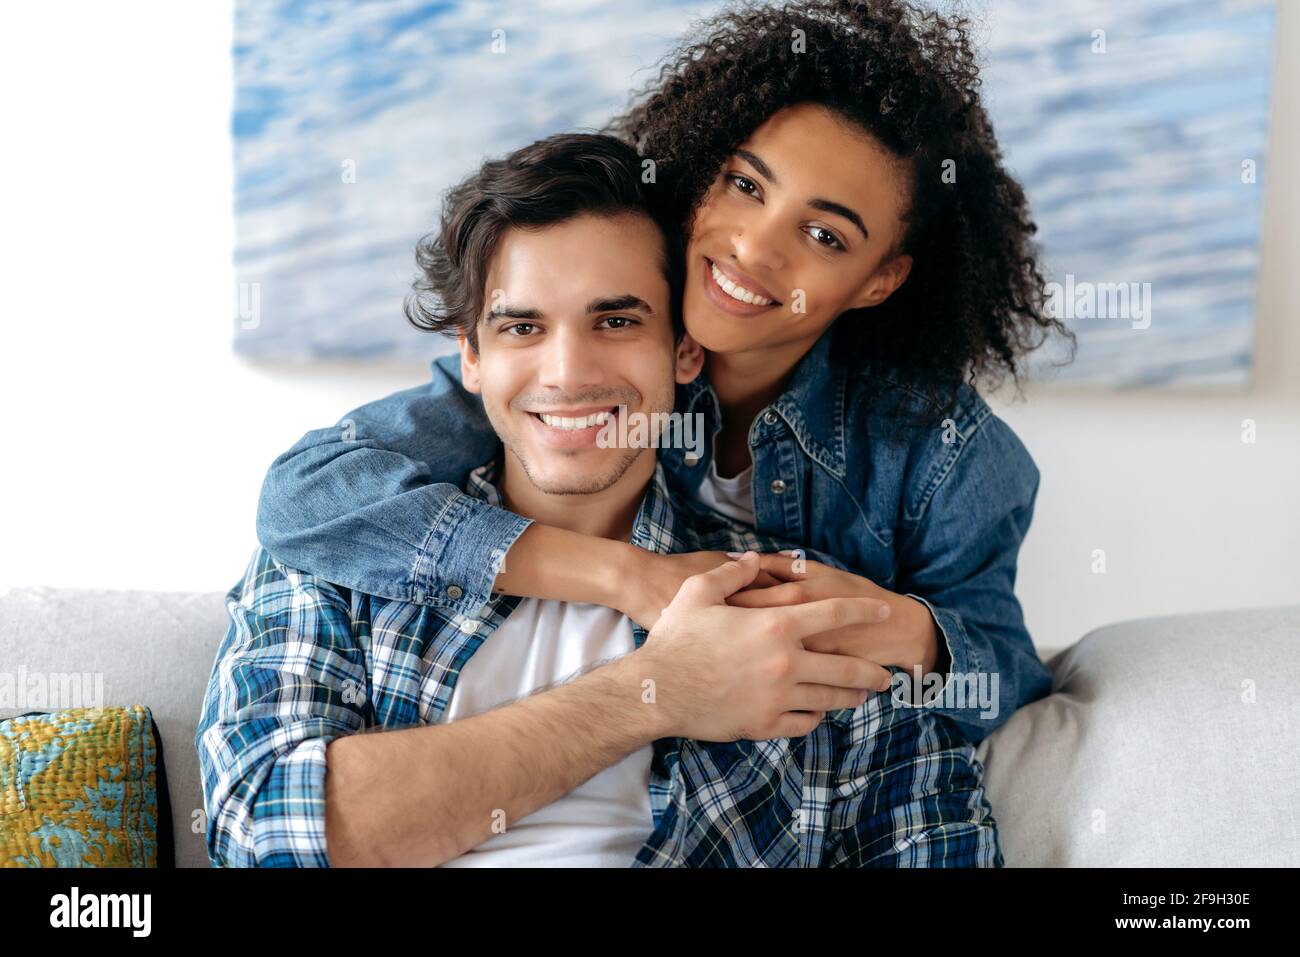 Portrait d'un couple de course mixte heureux amoureux. Jolie fille curly afro-américaine et un type hispanique séduisant tendinant les uns les autres, regardant l'appareil photo, souriant, famille heureuse Banque D'Images